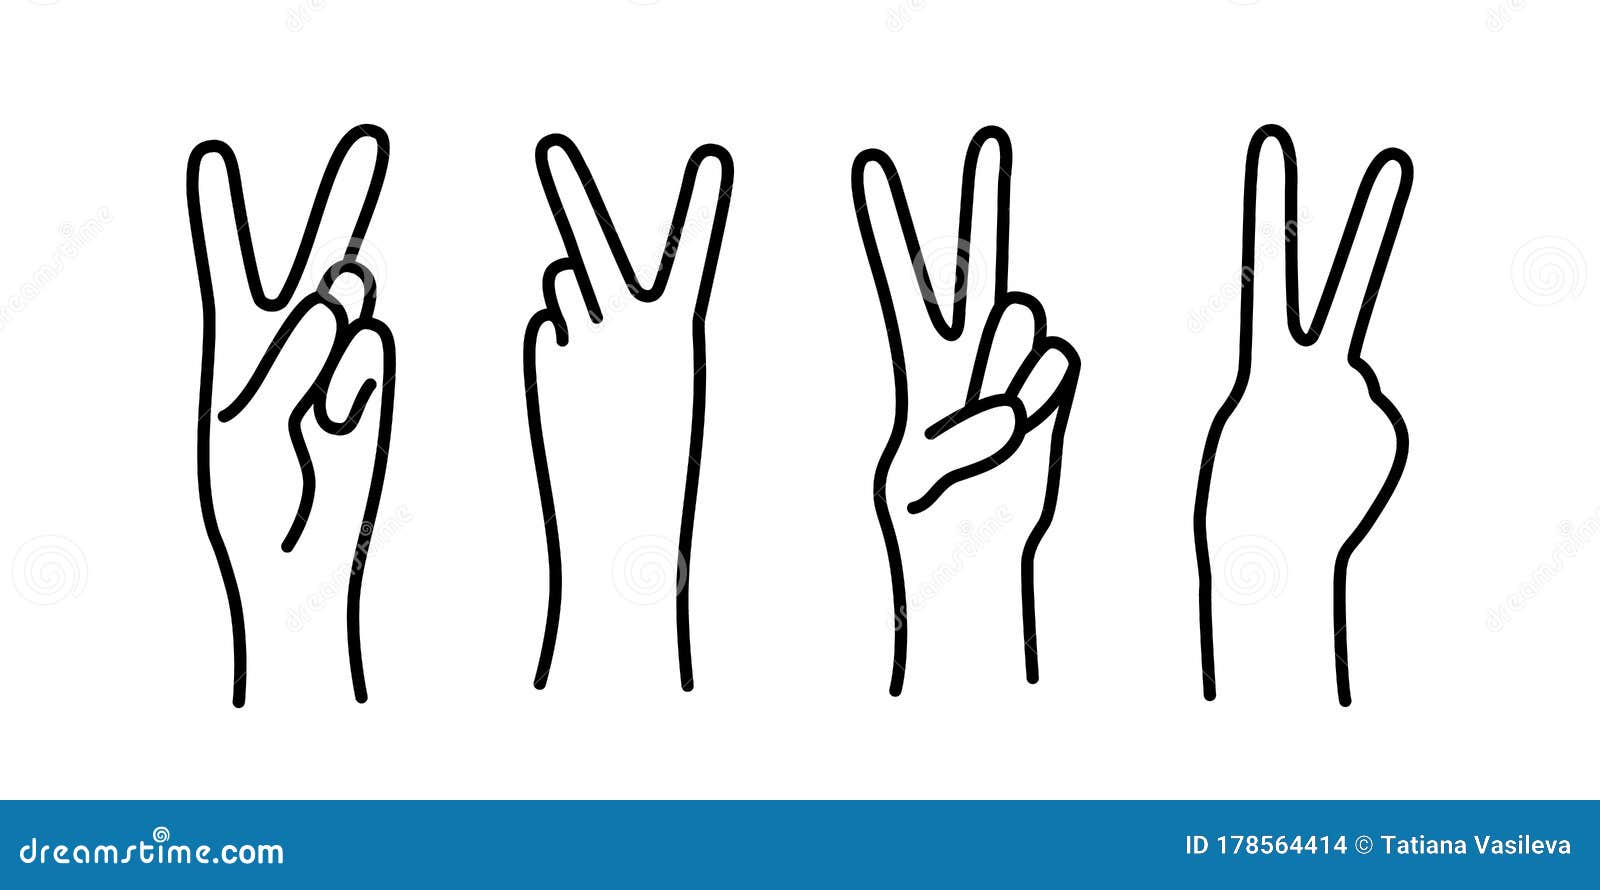 图片素材 : 手指, 符号, 显示, 和平, 一对, 手势, 信号, 休息, 臂, 武器, v, 2, 胜利, 第二, 拇指, sein ...